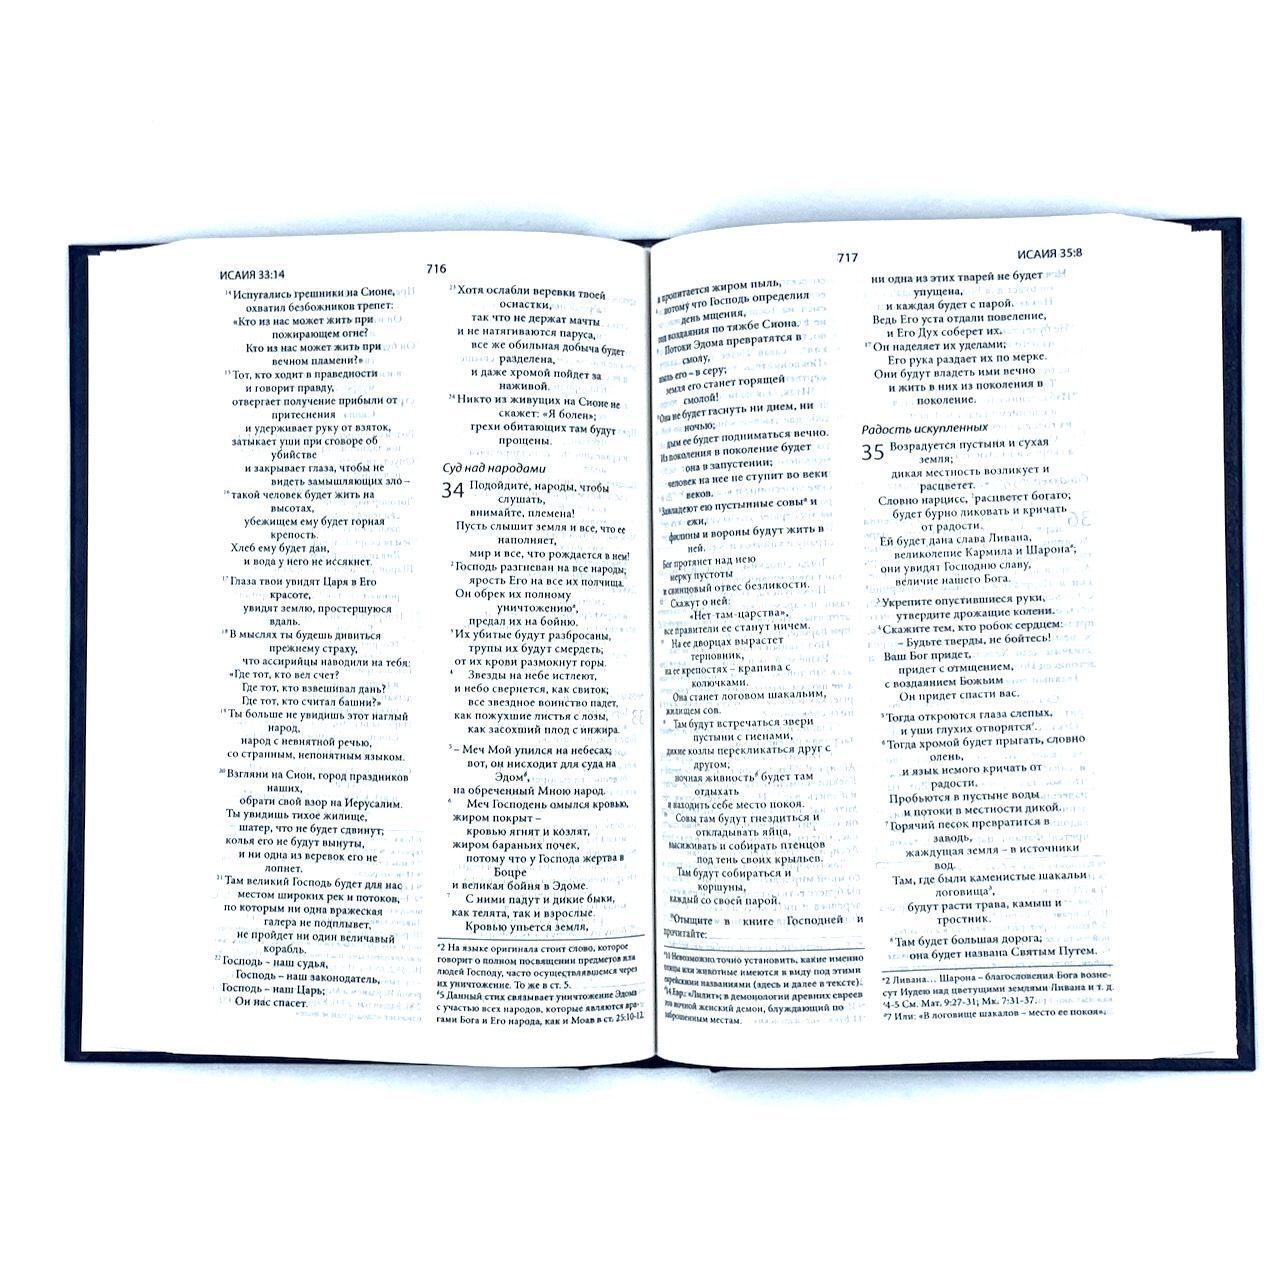 Святая библия. Новый русский перевод (формат 053). Перевод МБО, цвет темно-синий